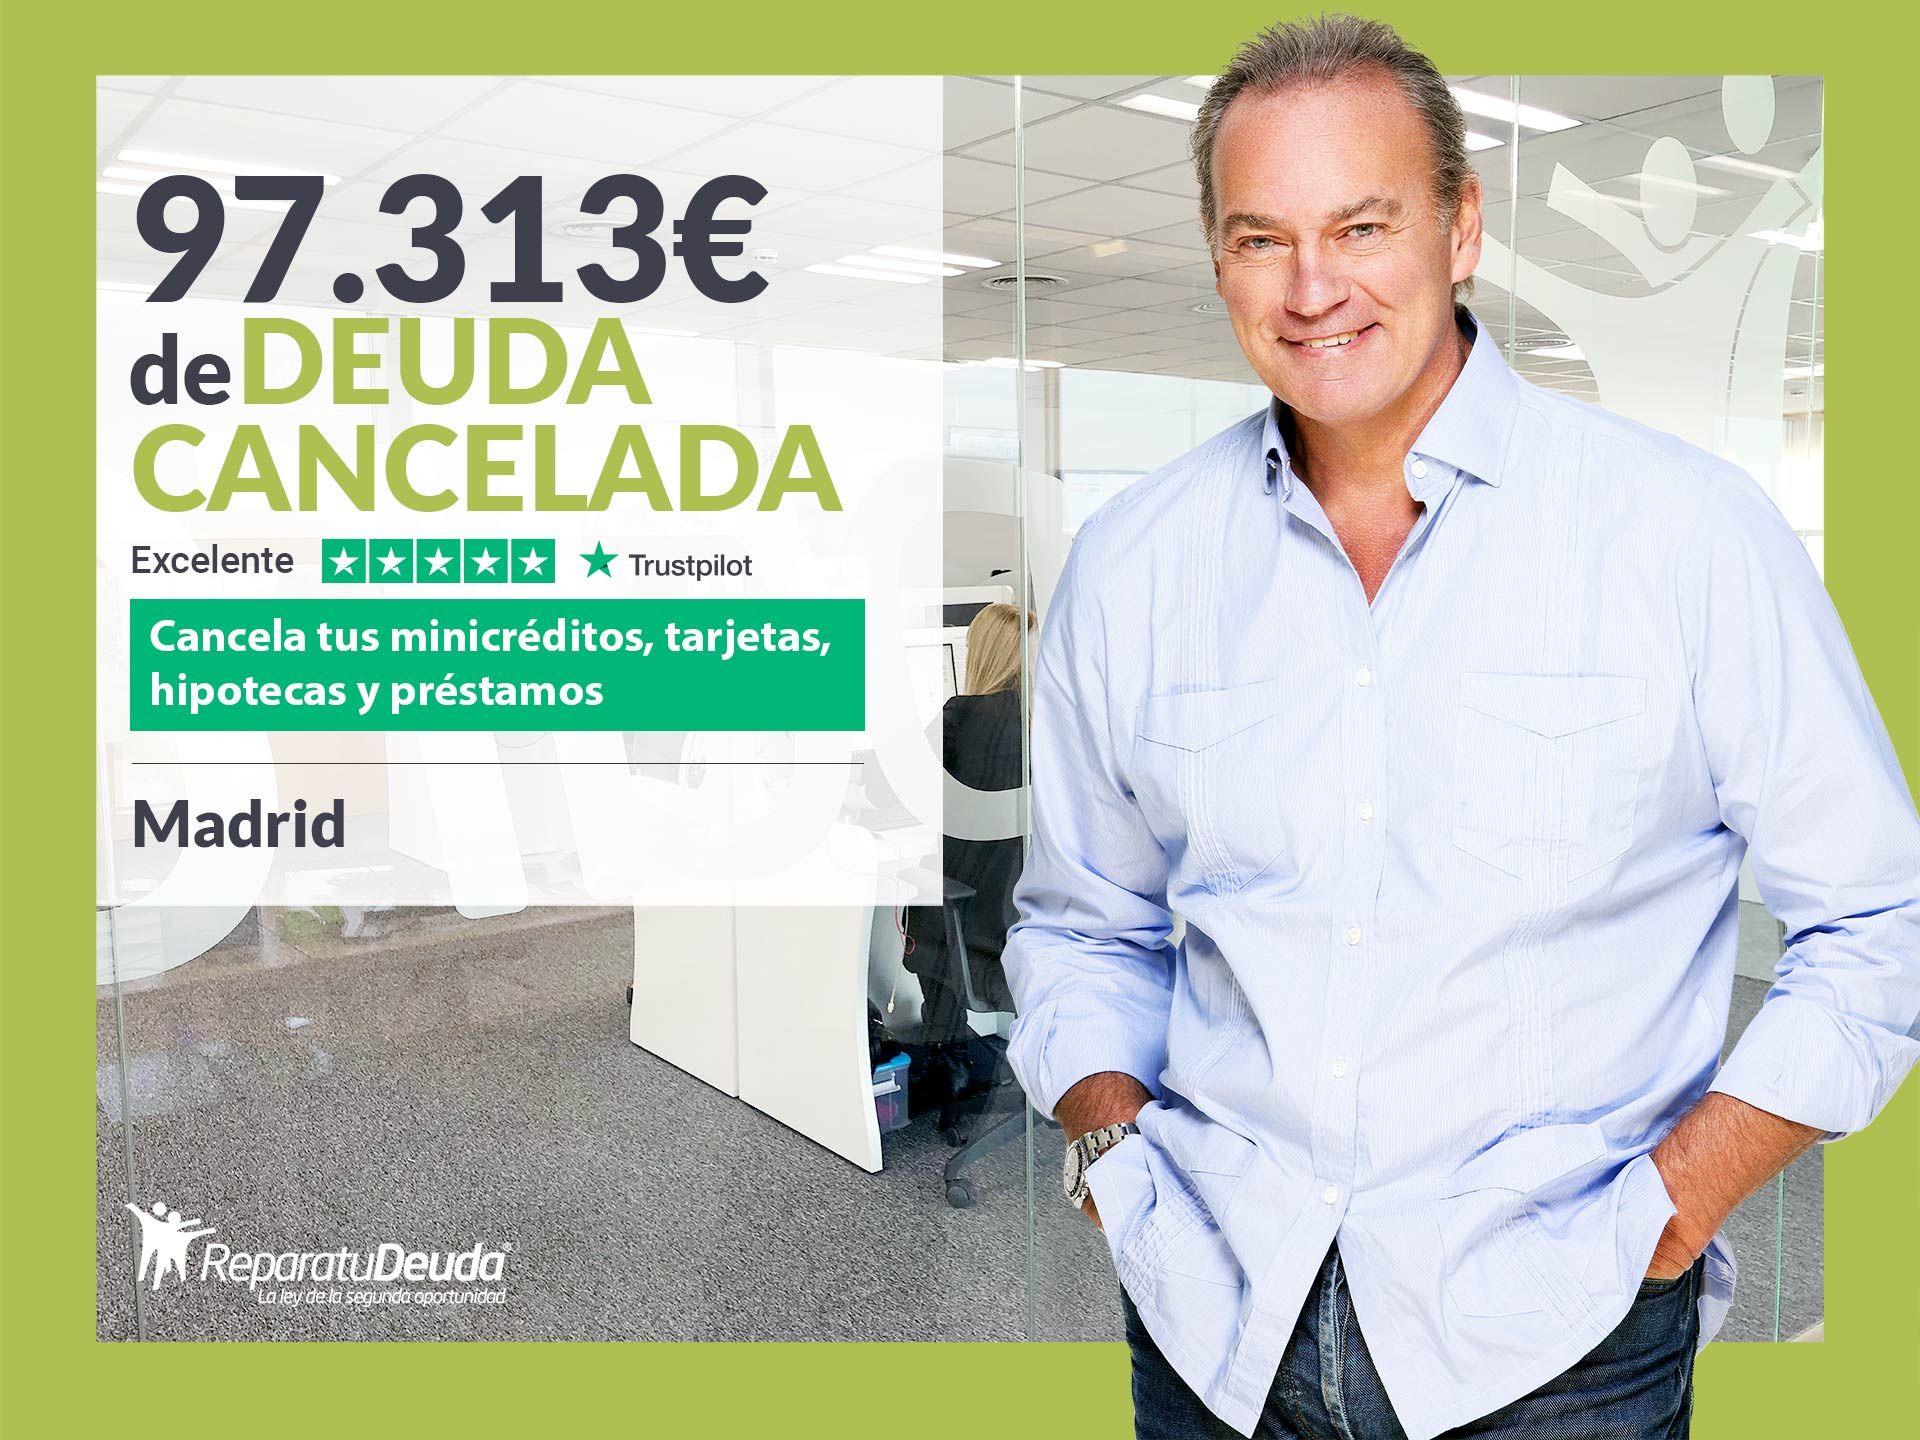 Repara tu Deuda Abogados cancela 97.313? en Madrid con la Ley de Segunda Oportunidad